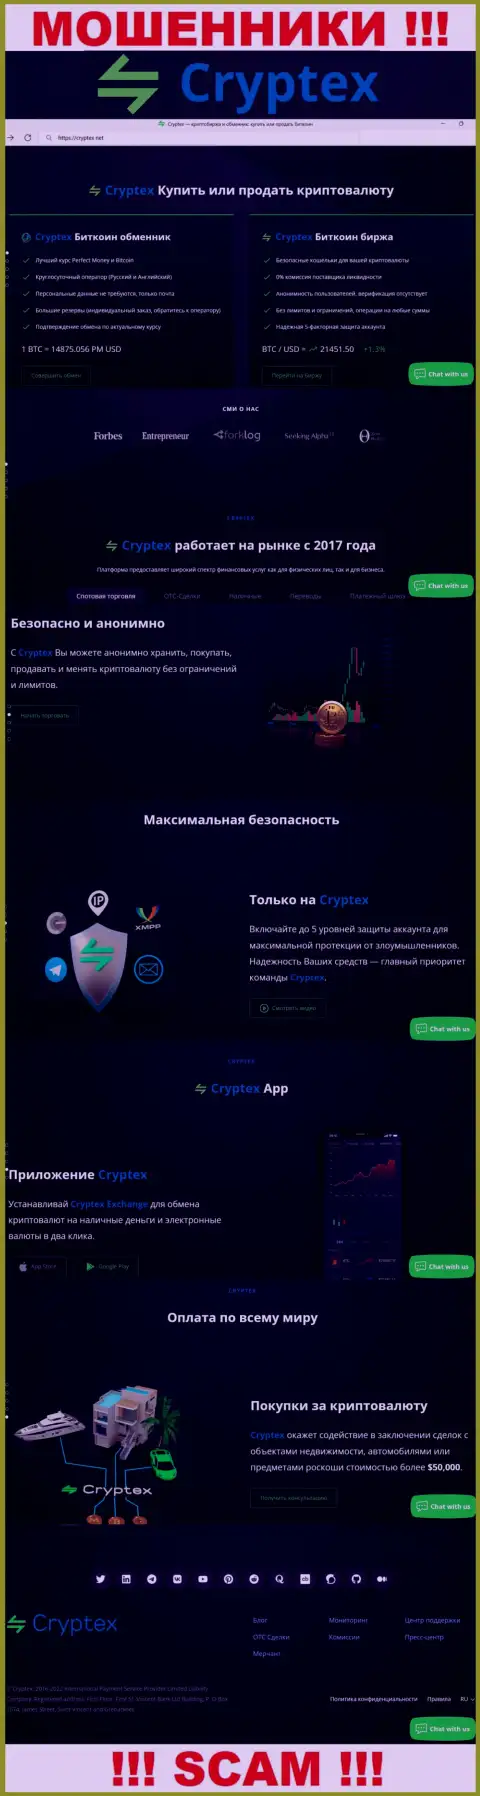 Скрин официального сайта мошеннической компании Криптекс Нет